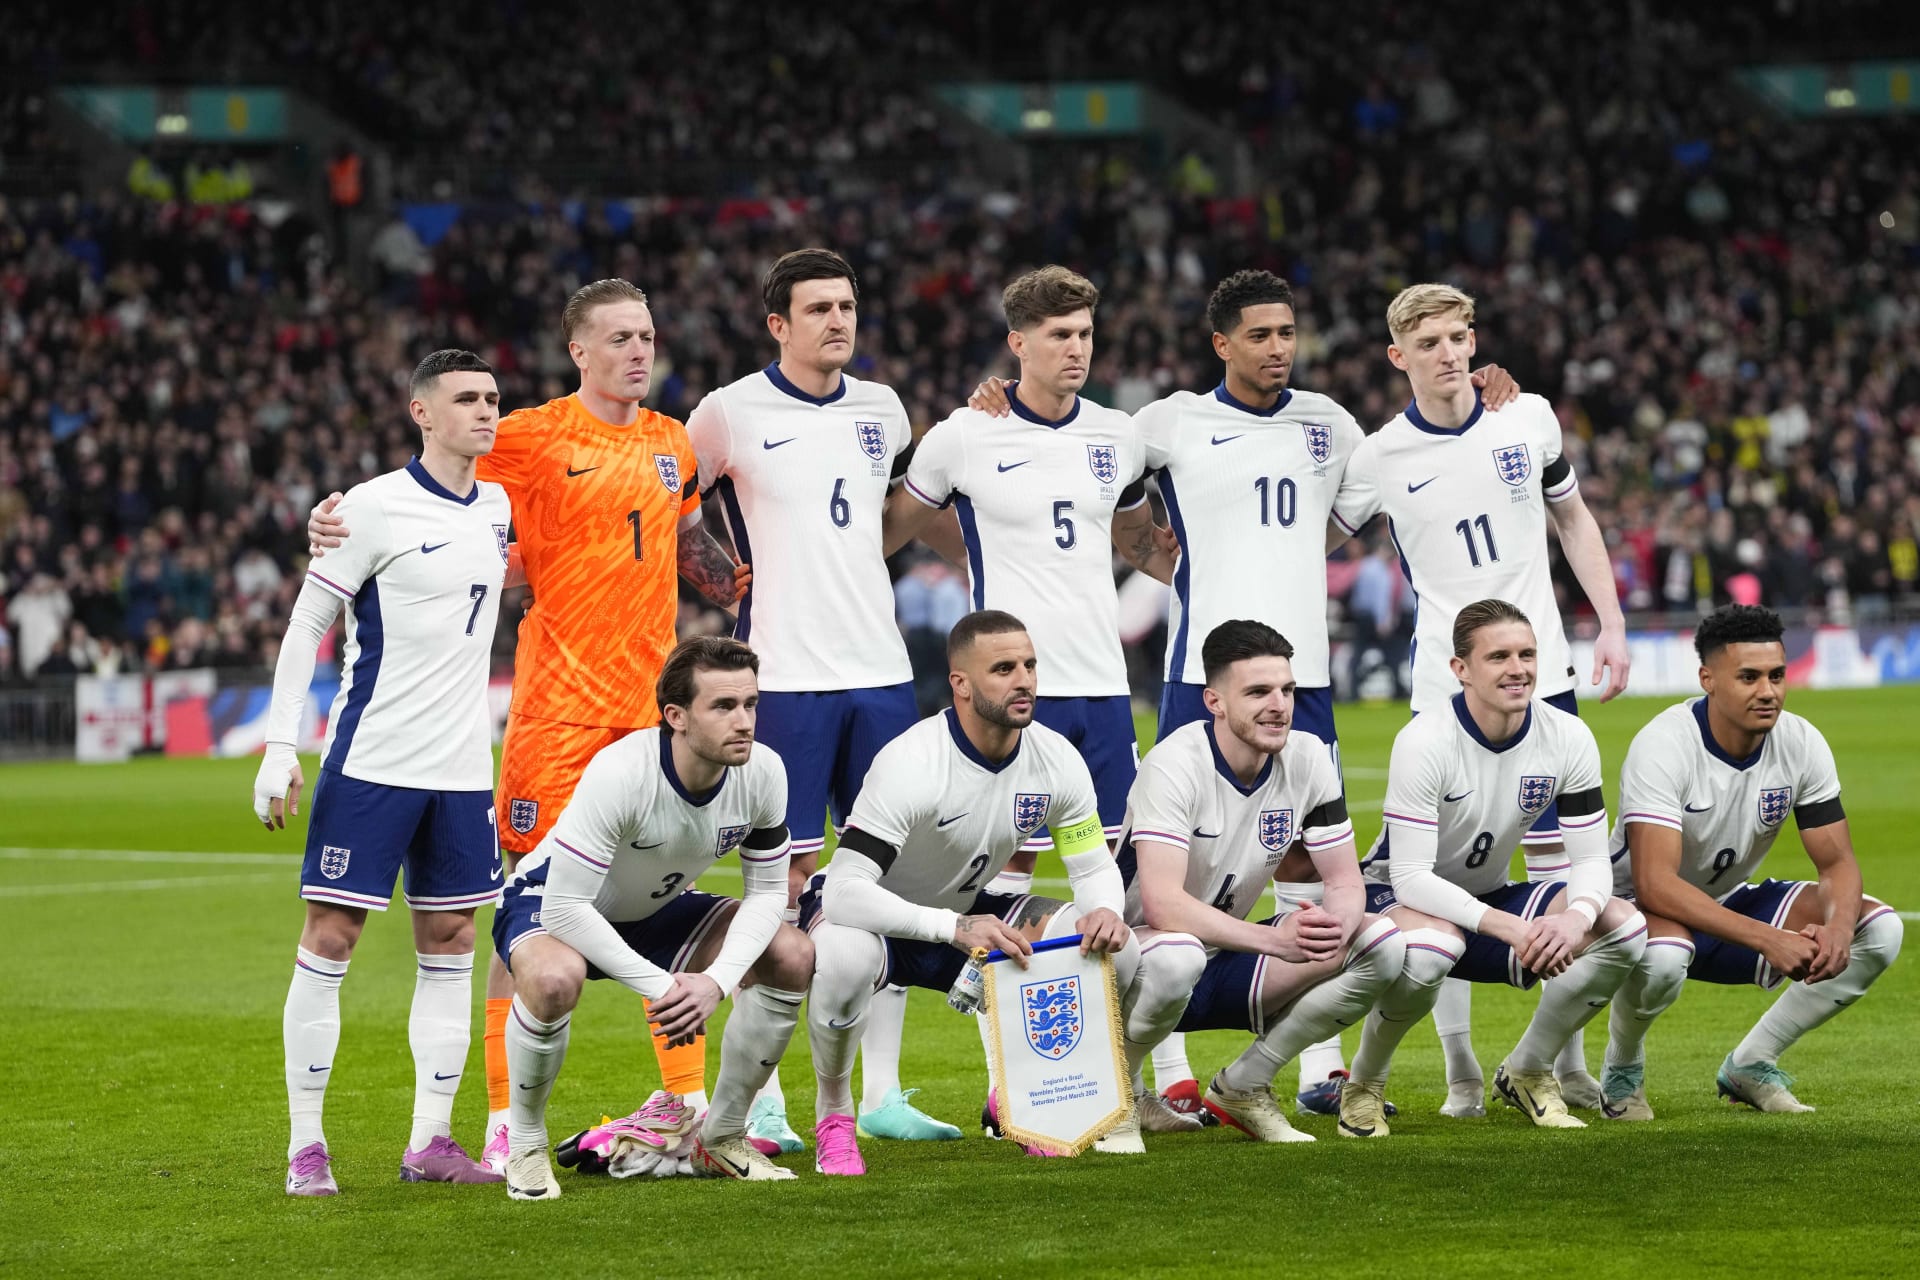 Hráči Anglie pózují fotografům před začátkem přátelského fotbalového zápasu mezi Anglií a Brazílií.